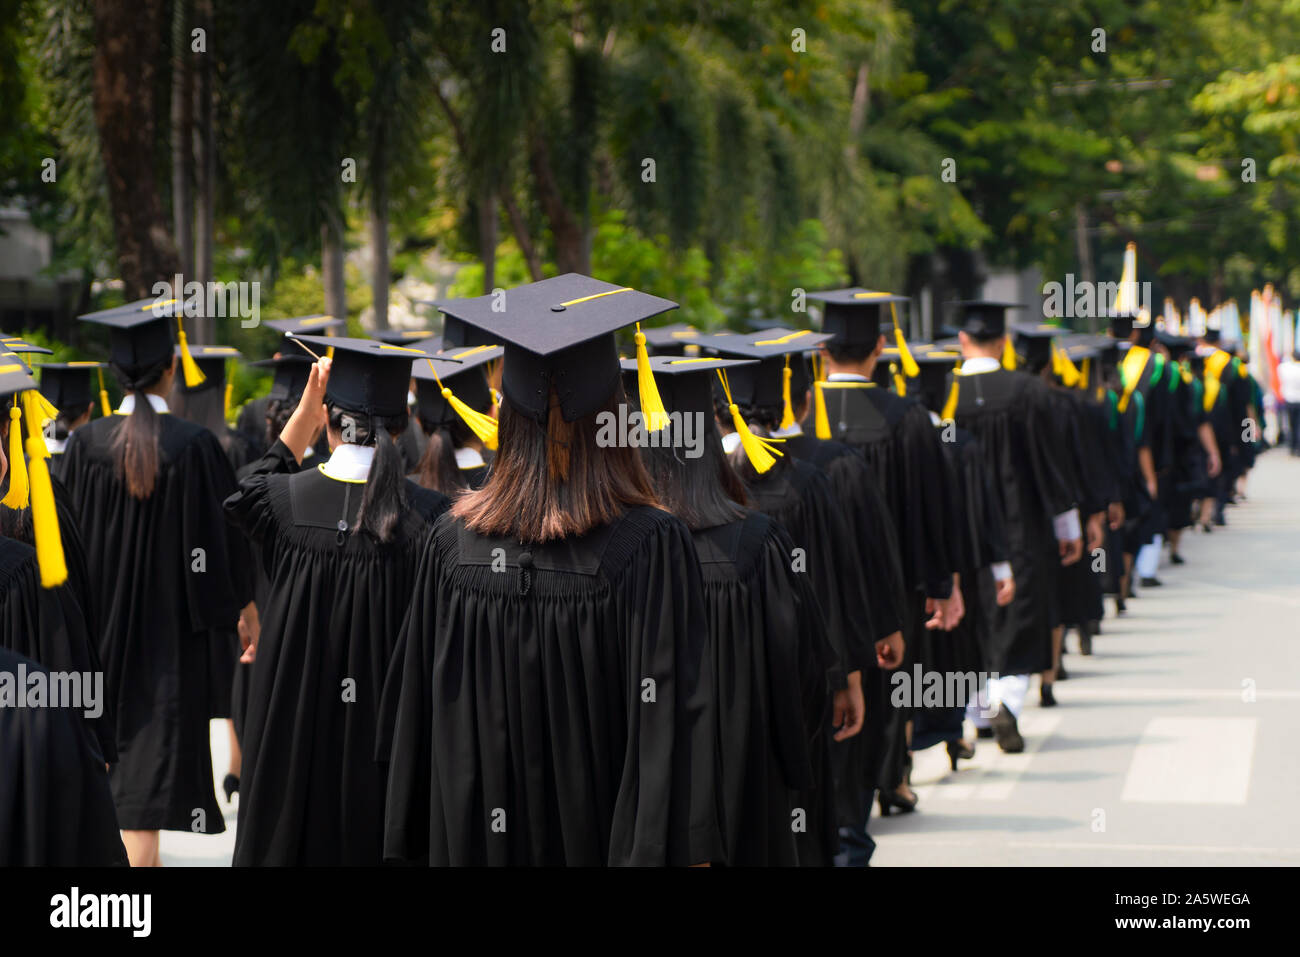 Rückansicht der Gruppe der Hochschulabsolventen in schwarzen Roben für Grad in der Universität Abschlussfeier. Konzept Bildung Gratulation, Stu Stockfoto